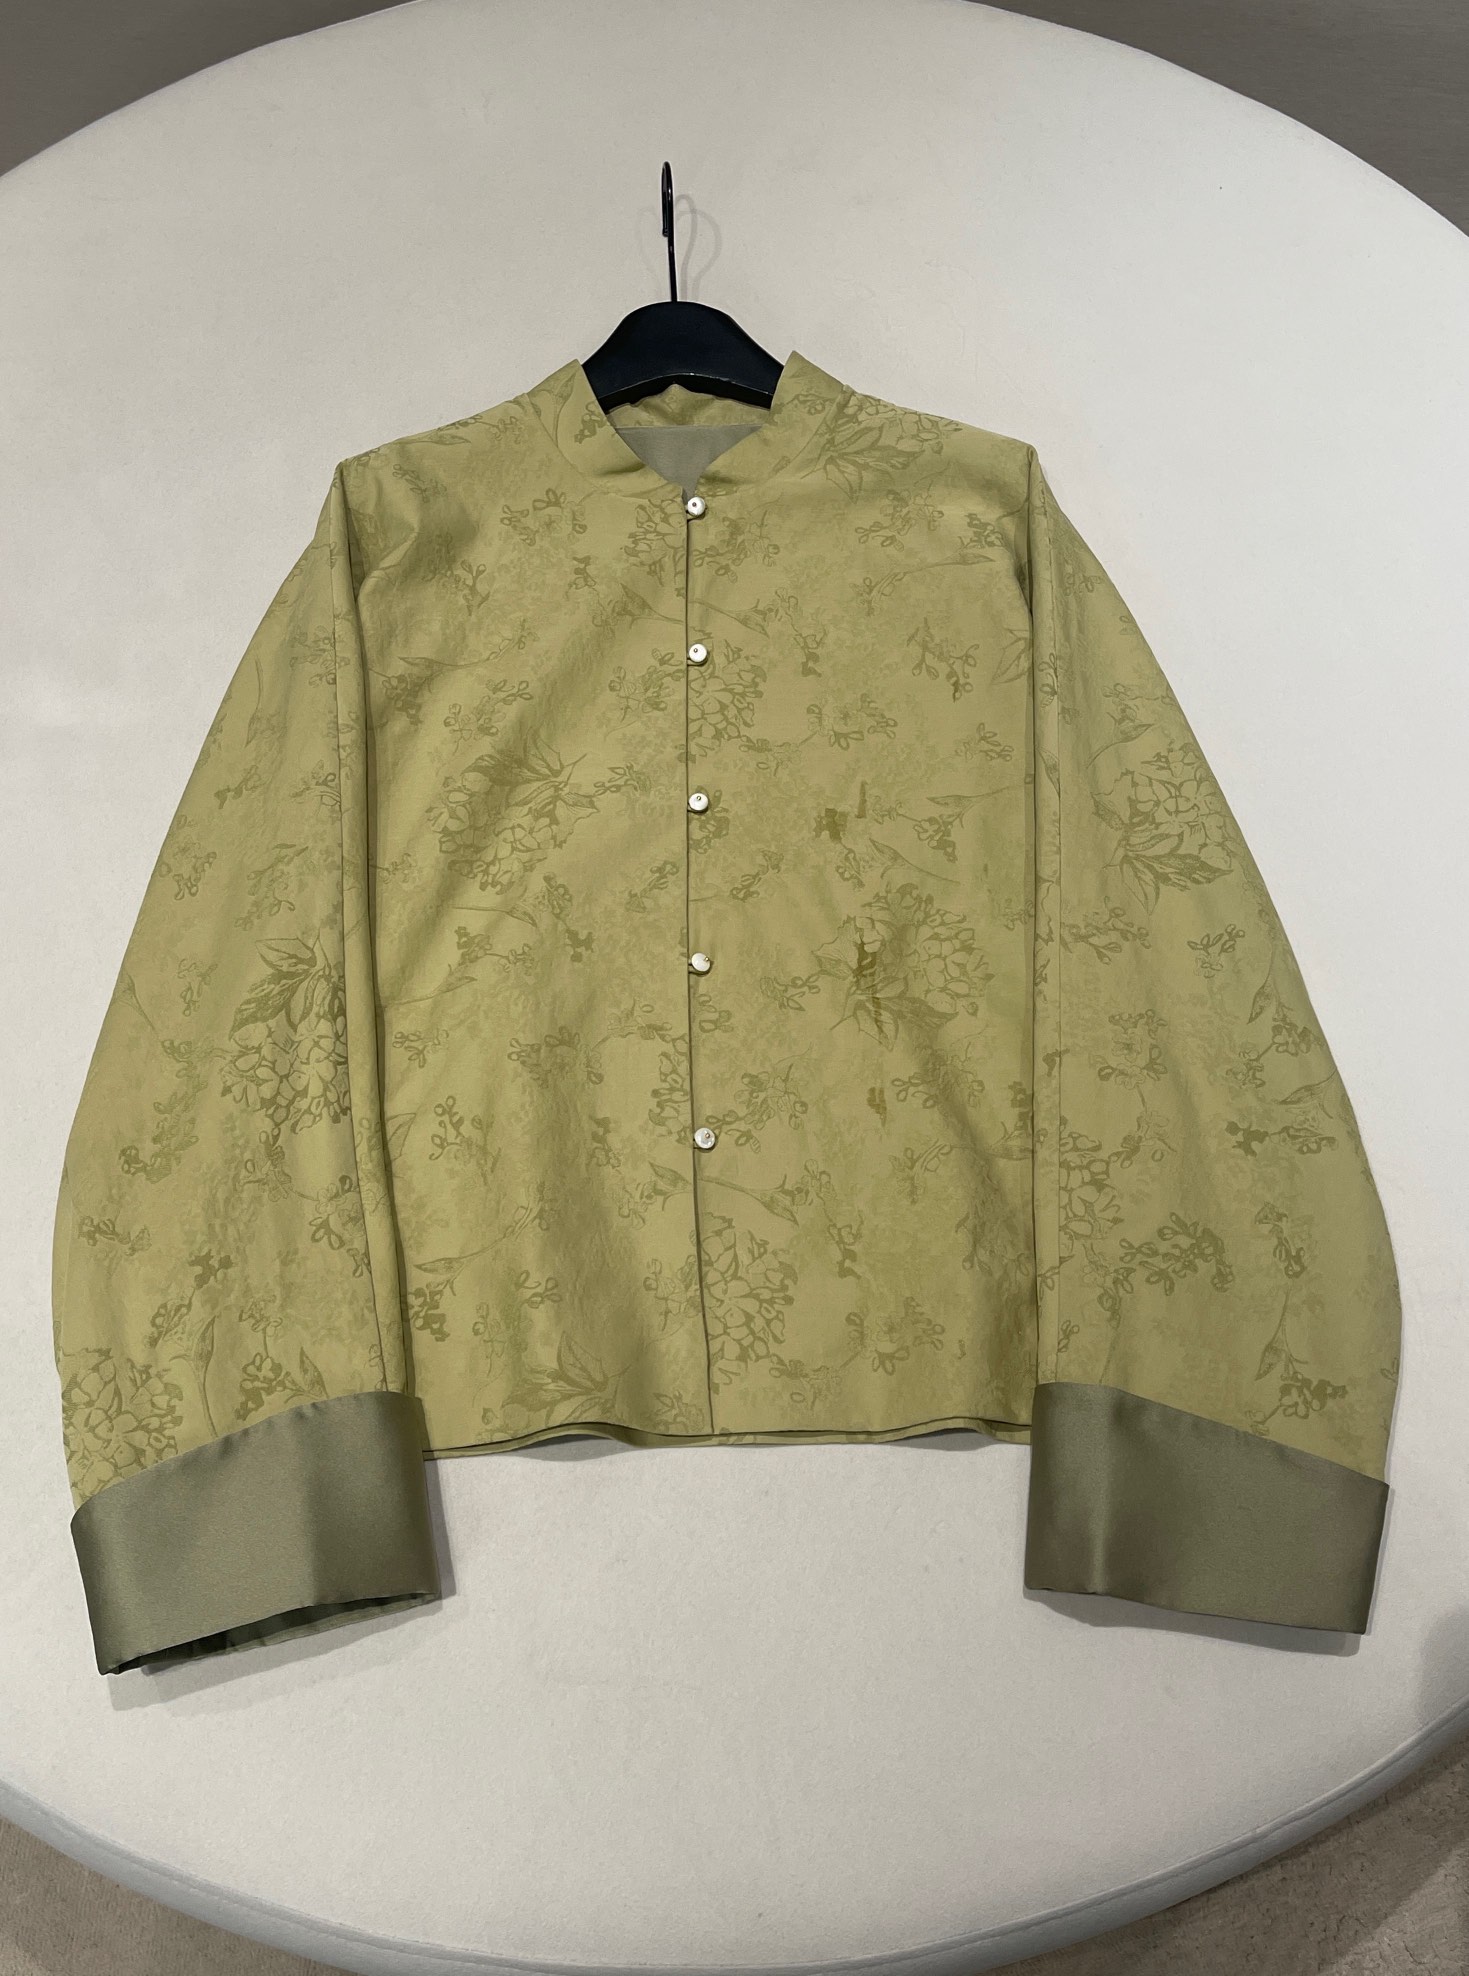 HKPejwyyy  尺码：M.L.XL 新中式提花织锦绿色外套美绝了的一款中式外套，不同于一般的提花织锦，特别适合春天，充满活力的绿色，采用的是提花织锦工艺，细节美感足足的。很有古典感韵味。